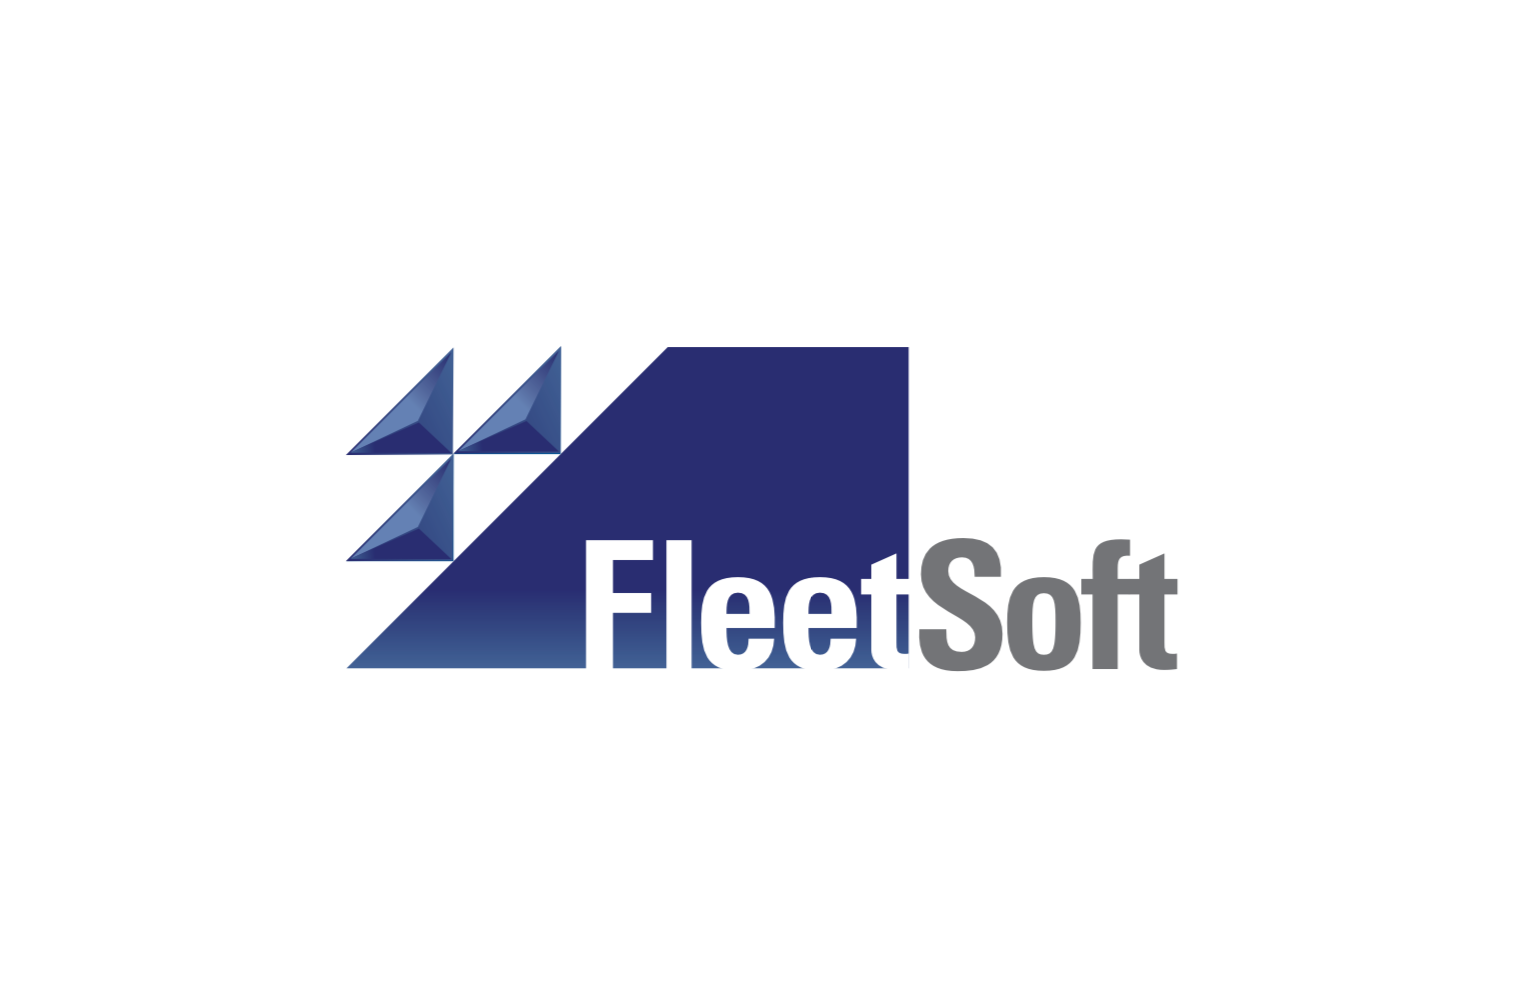 Fleet Software